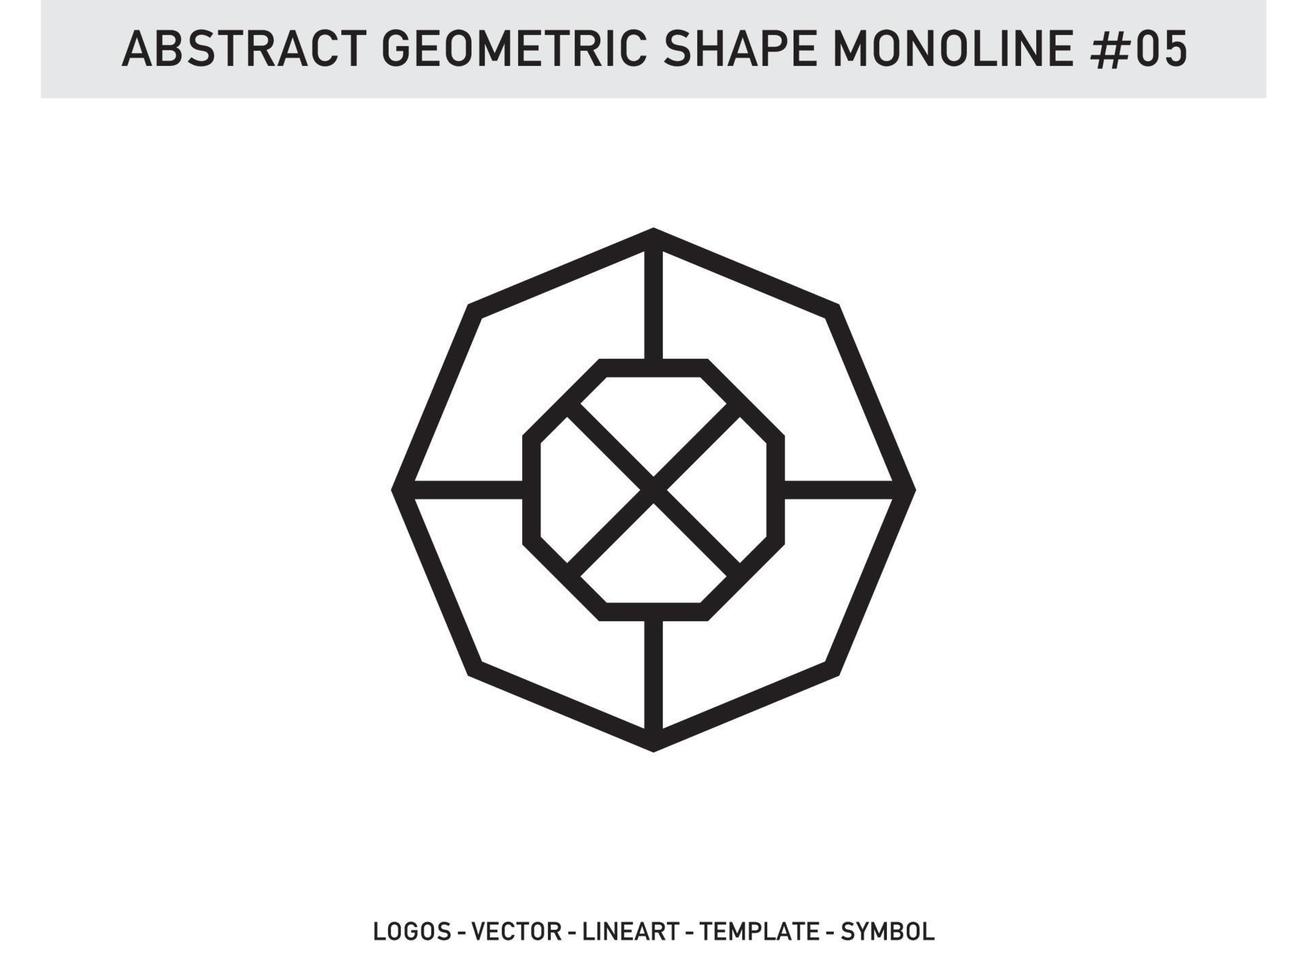 conception de carreaux de forme abstraite géométrique monoline décoratif gratuit pro vecteur